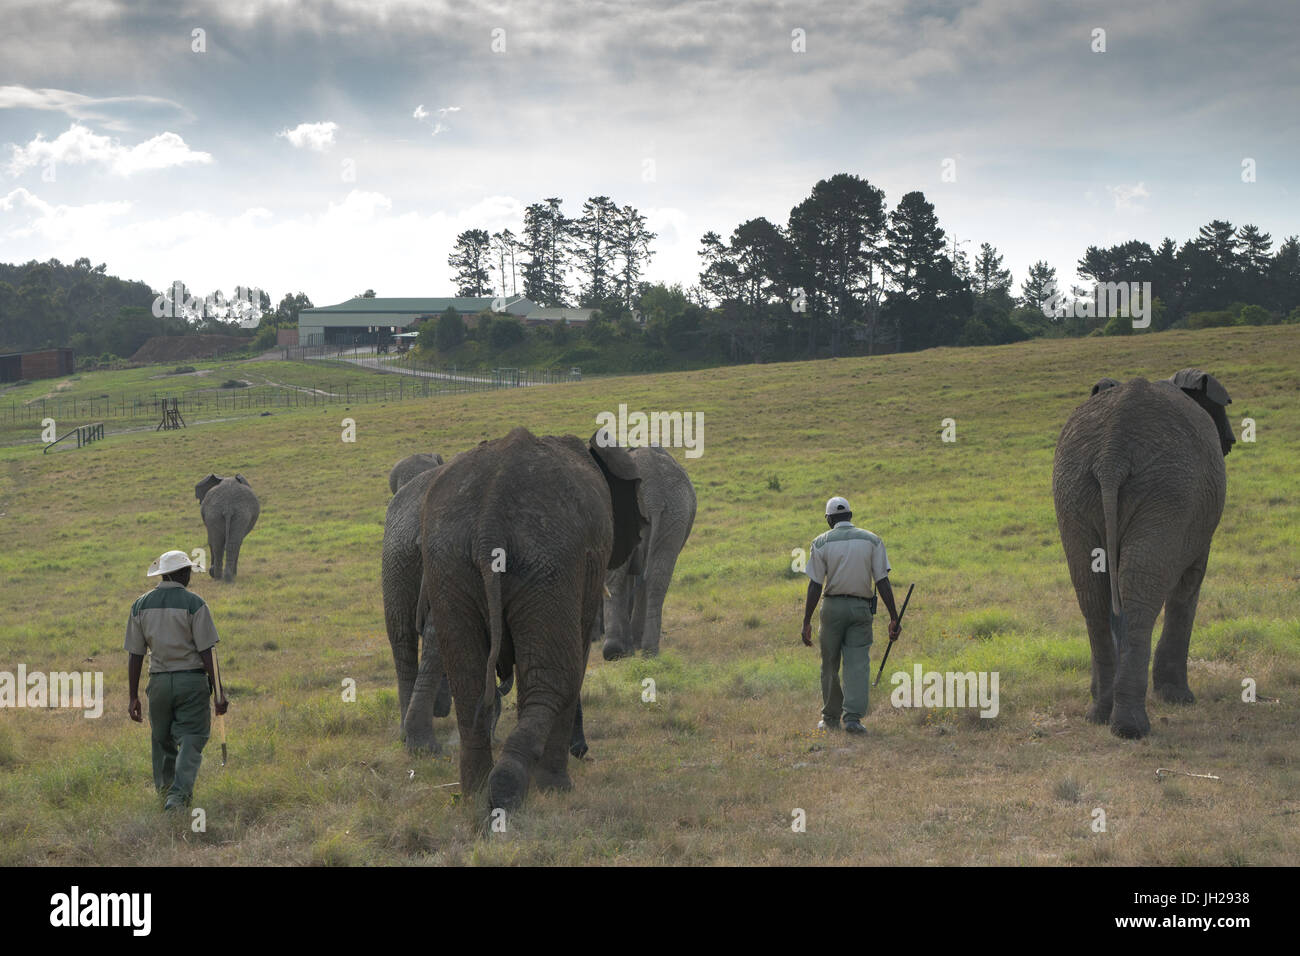 Les éléphants étant conduit par accueil éleveurs de la lumière du soir, à Kynsna Elephant Park, Knysna, Afrique du Sud, l'Afrique Banque D'Images